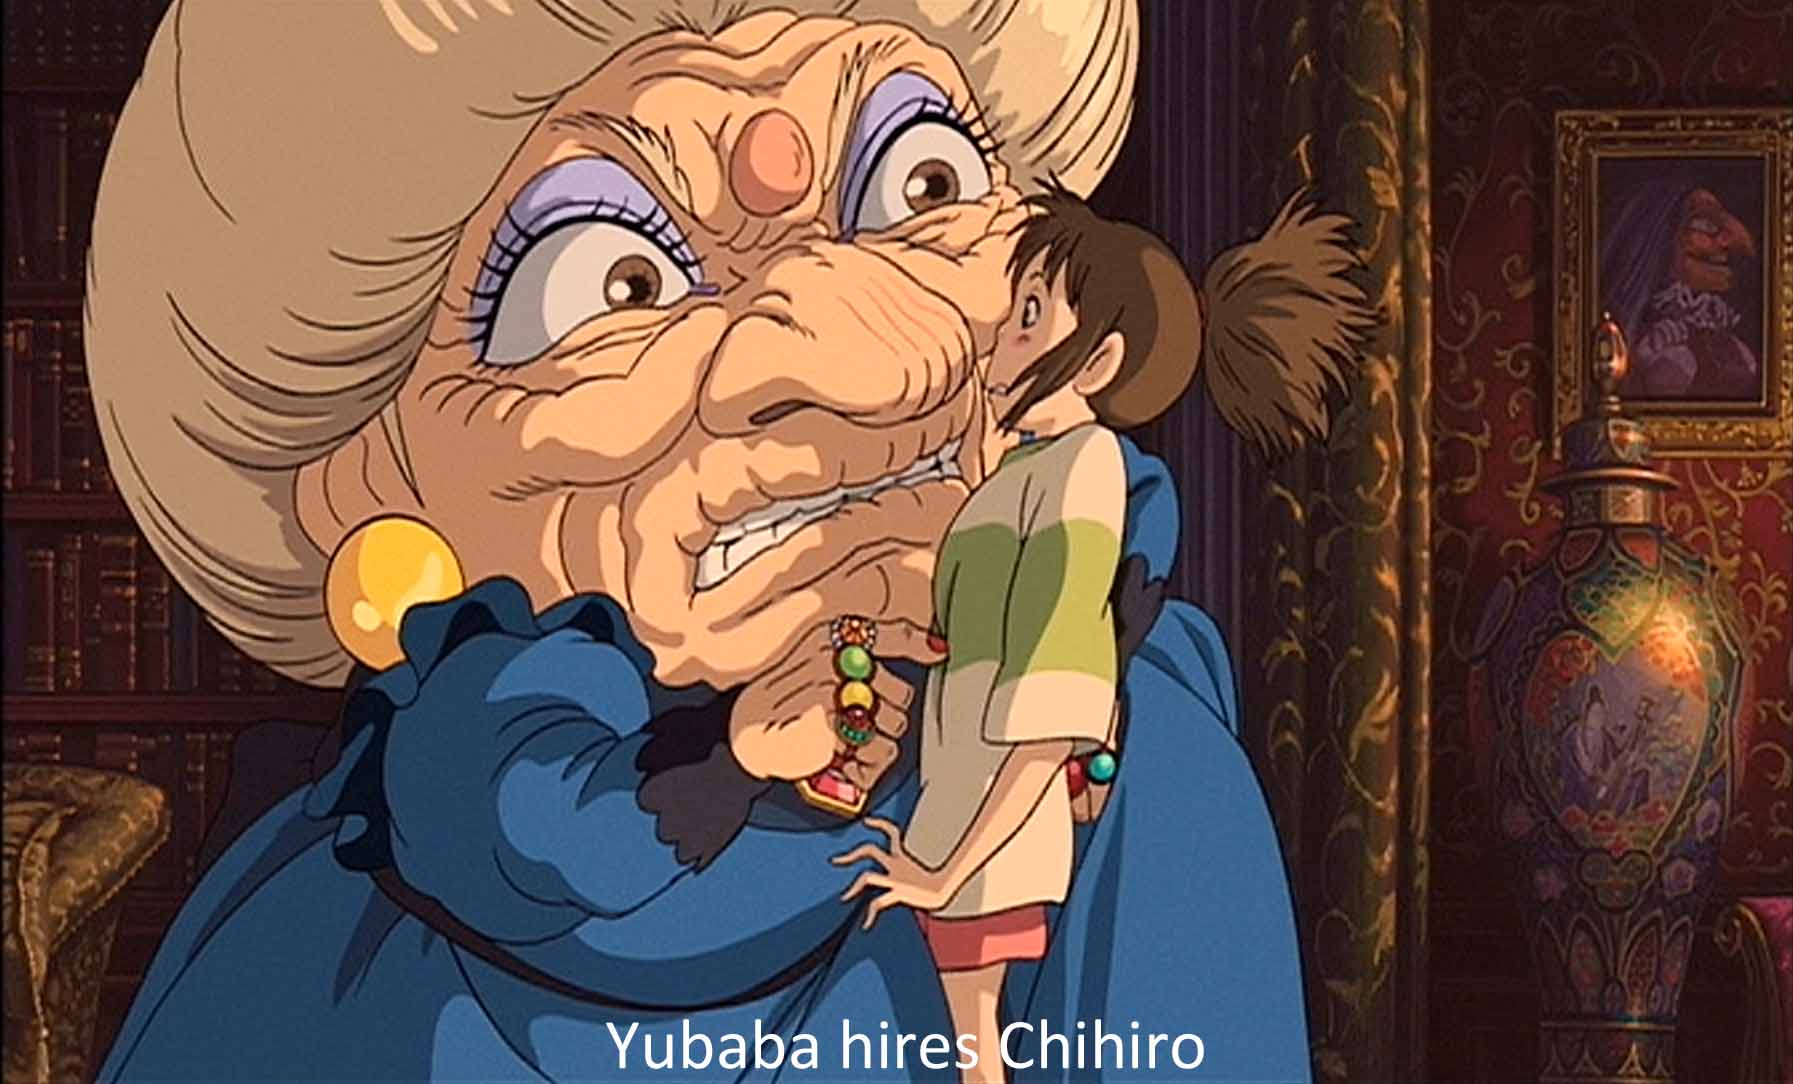 Yubaba hires Chihiro